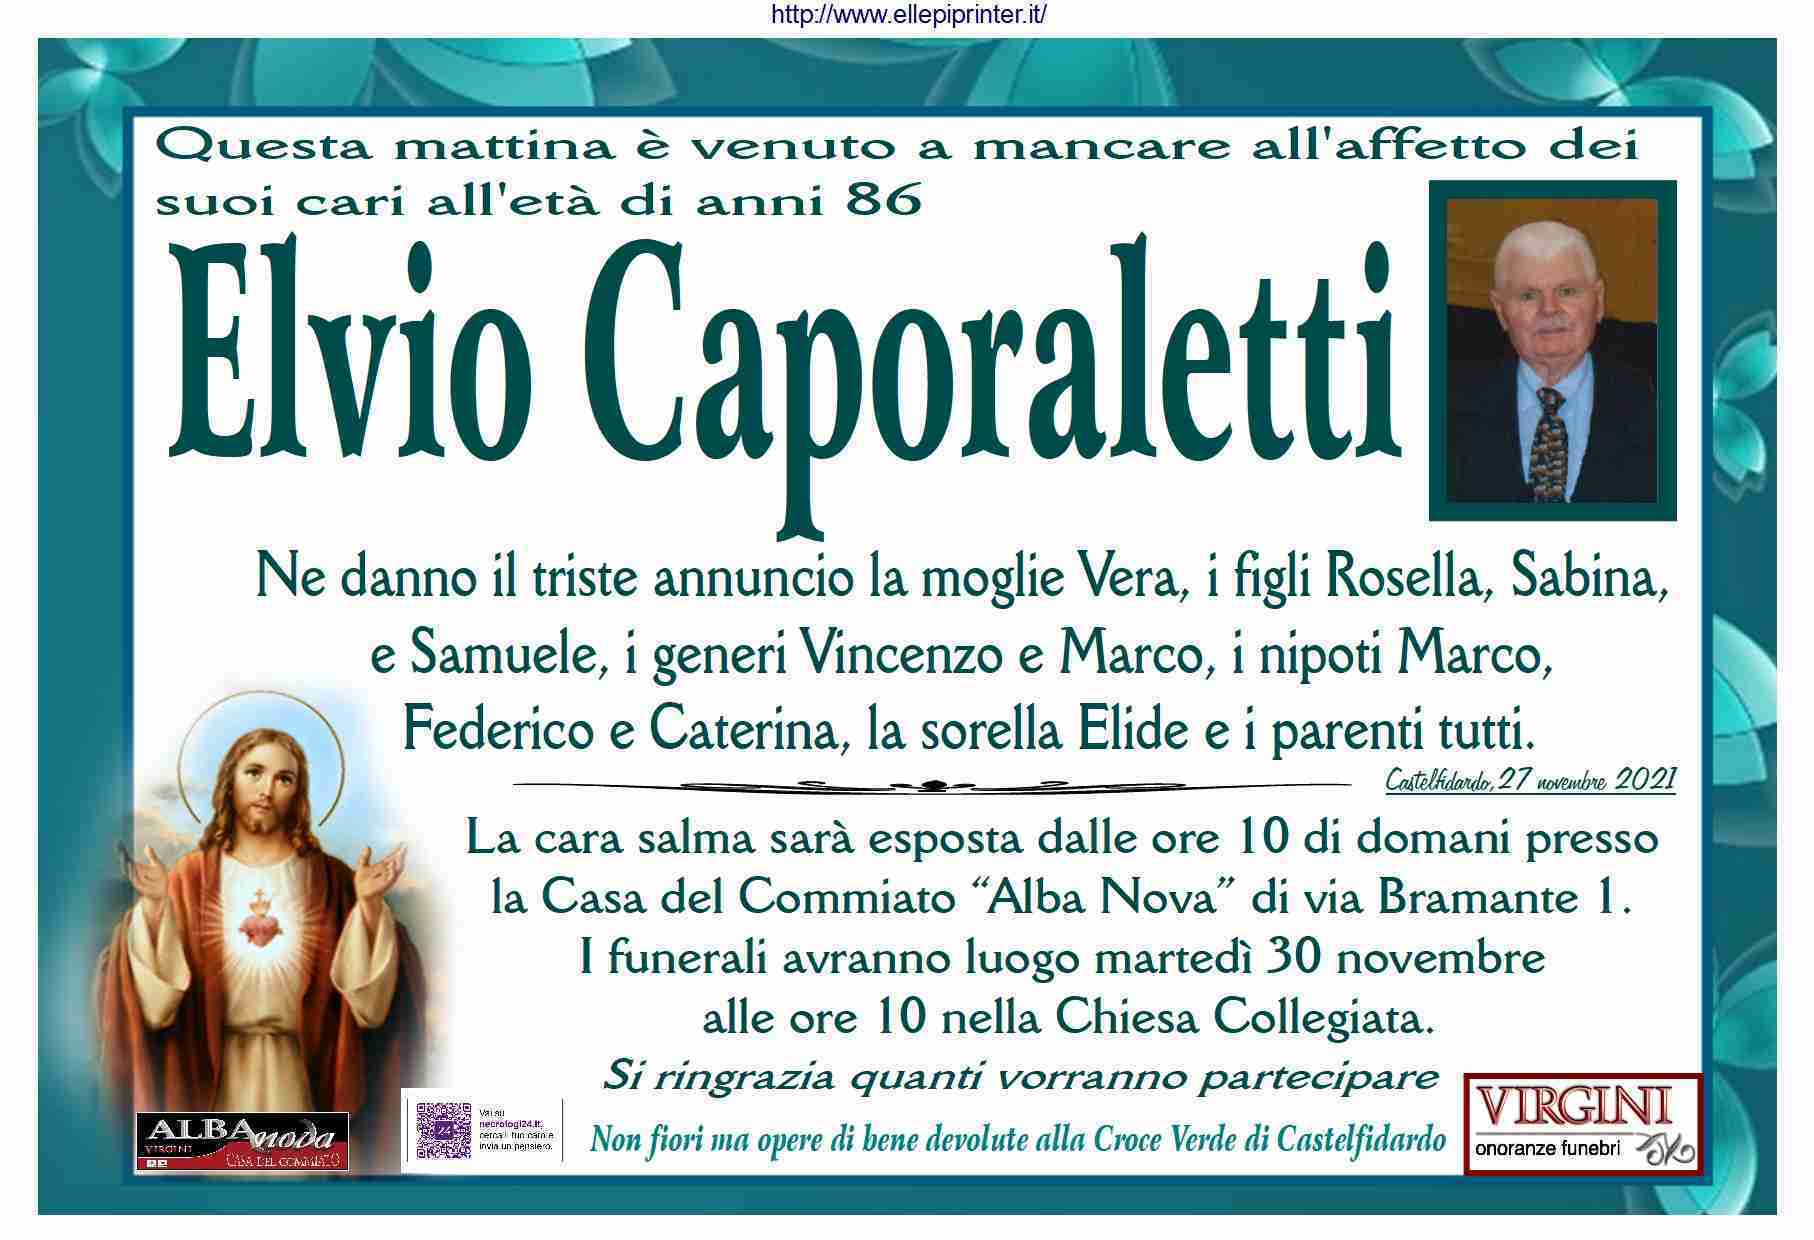 Elvio Caporaletti